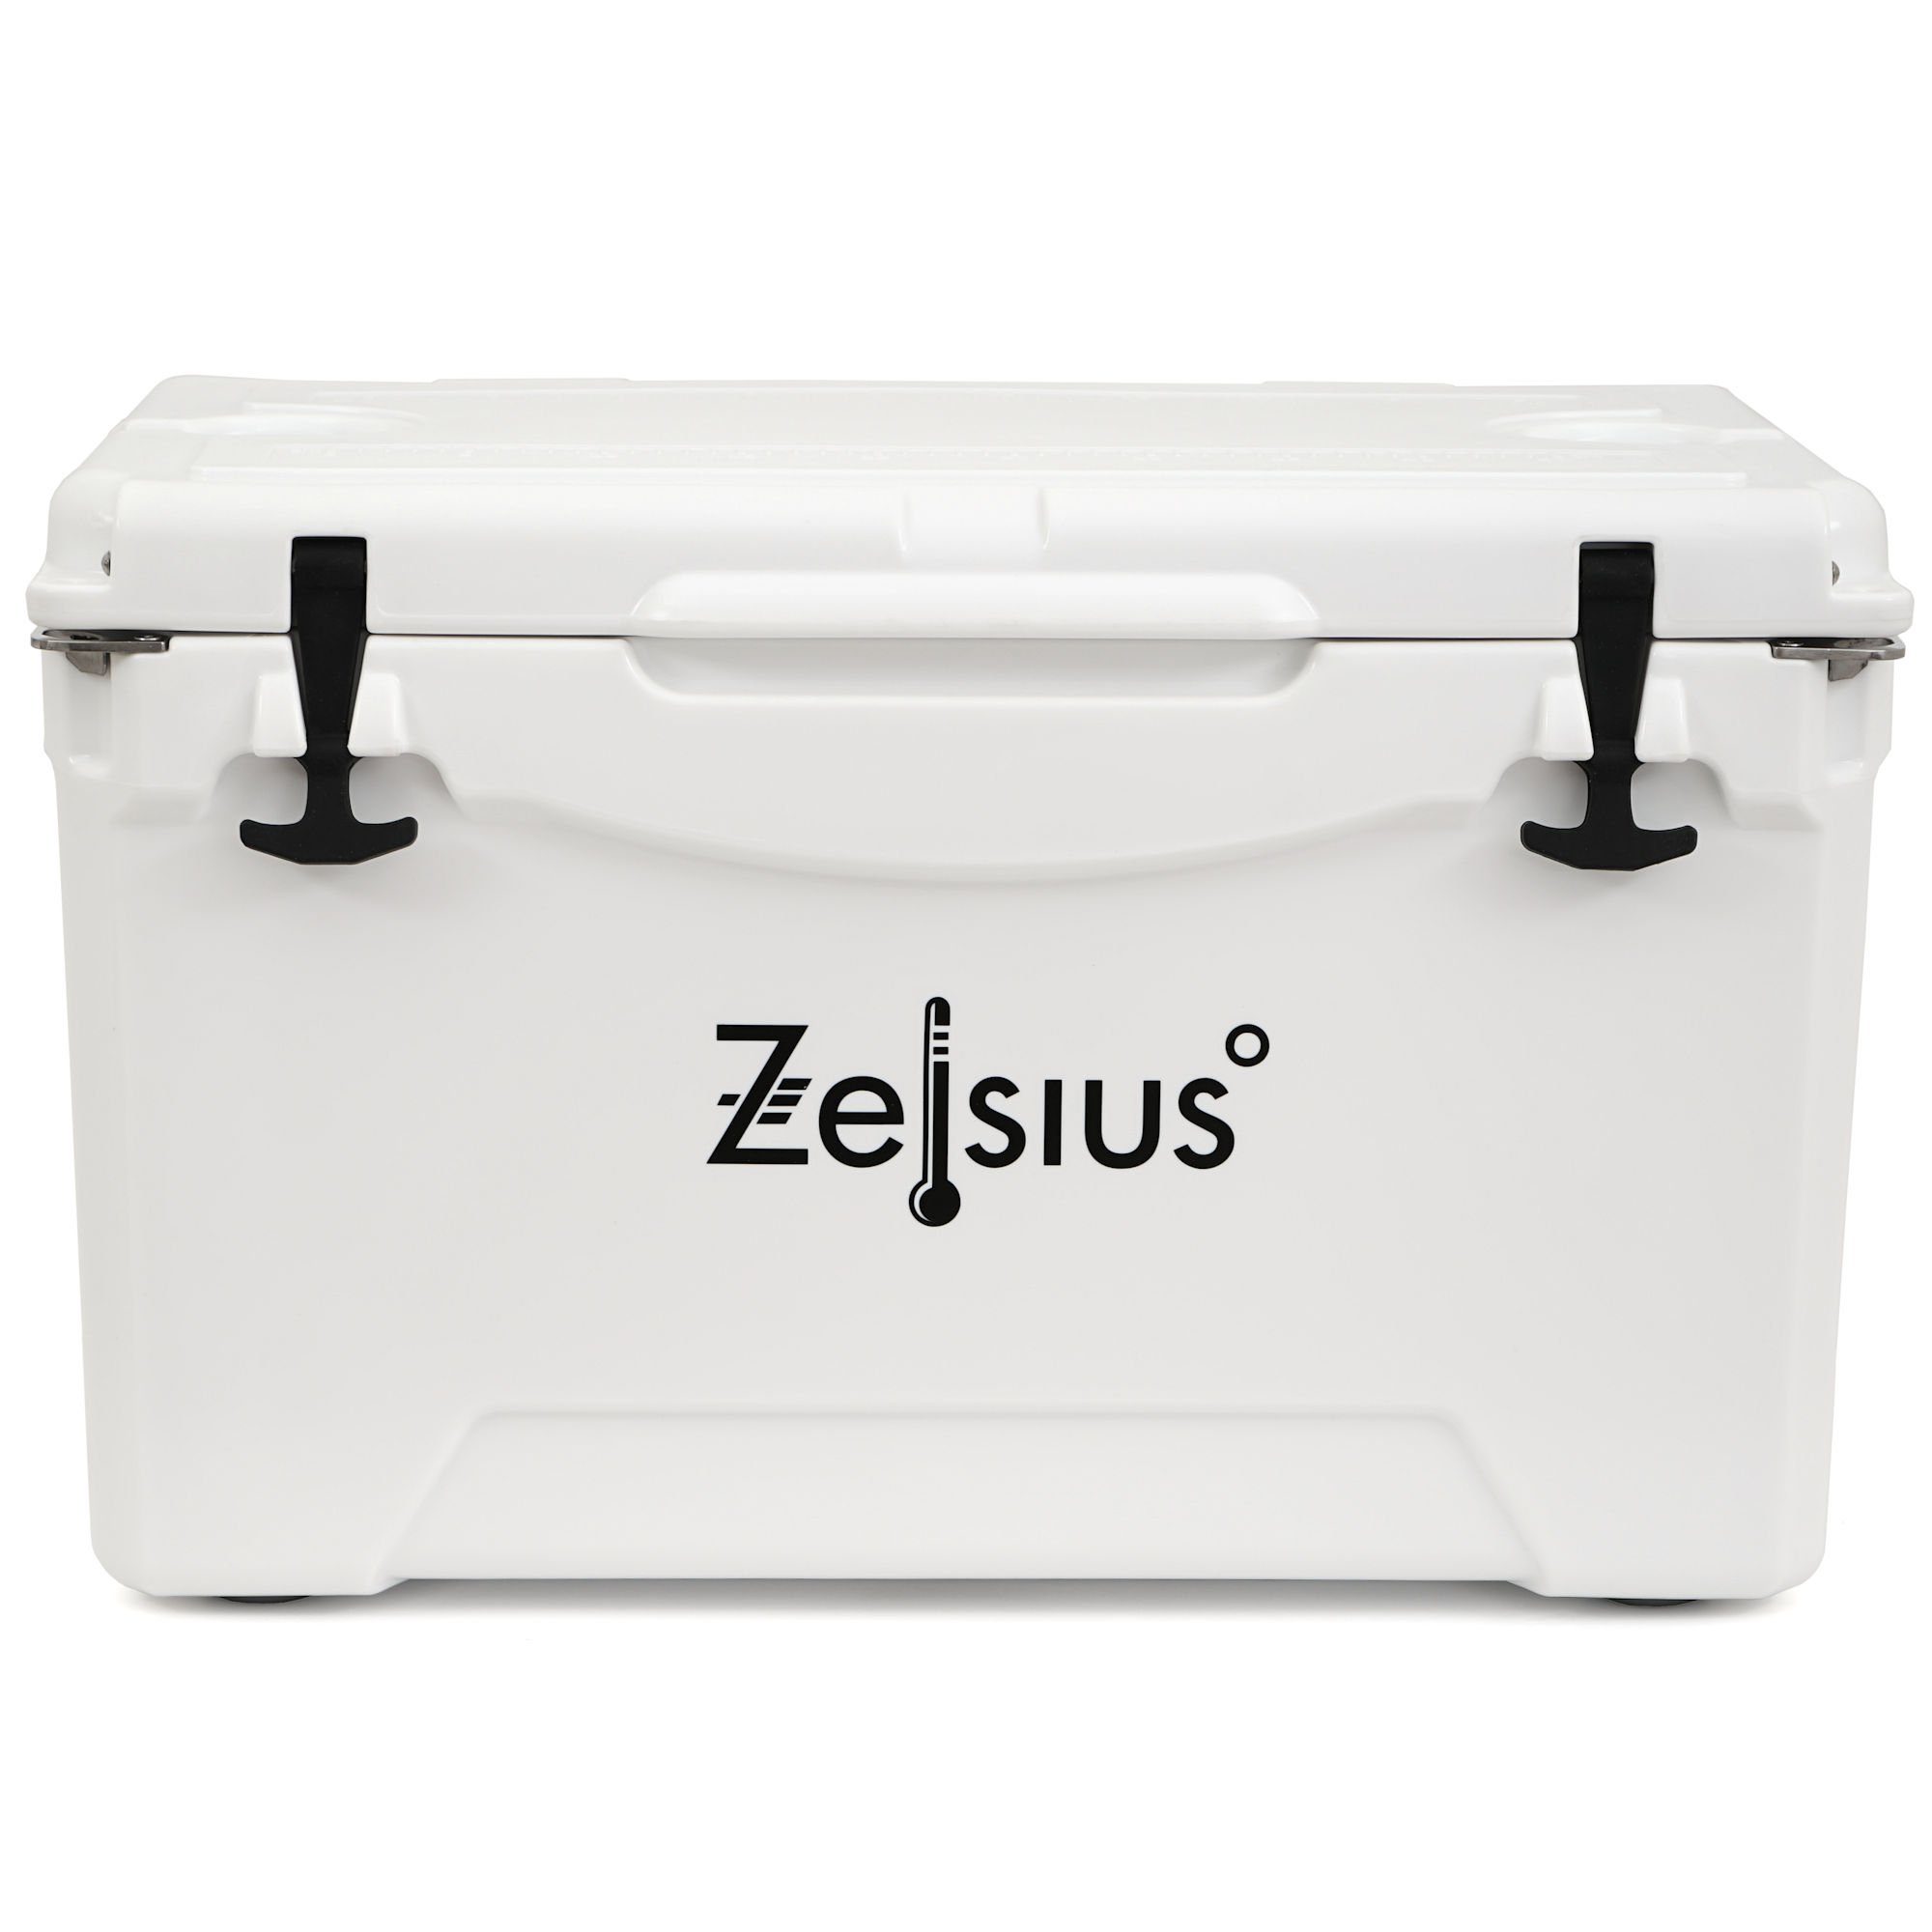 Cooling ideal Liter, Auto Flaschenöffner Kühlbox 50 Zelsius l, für 50 Kühlbox mit Camping, weiß Box